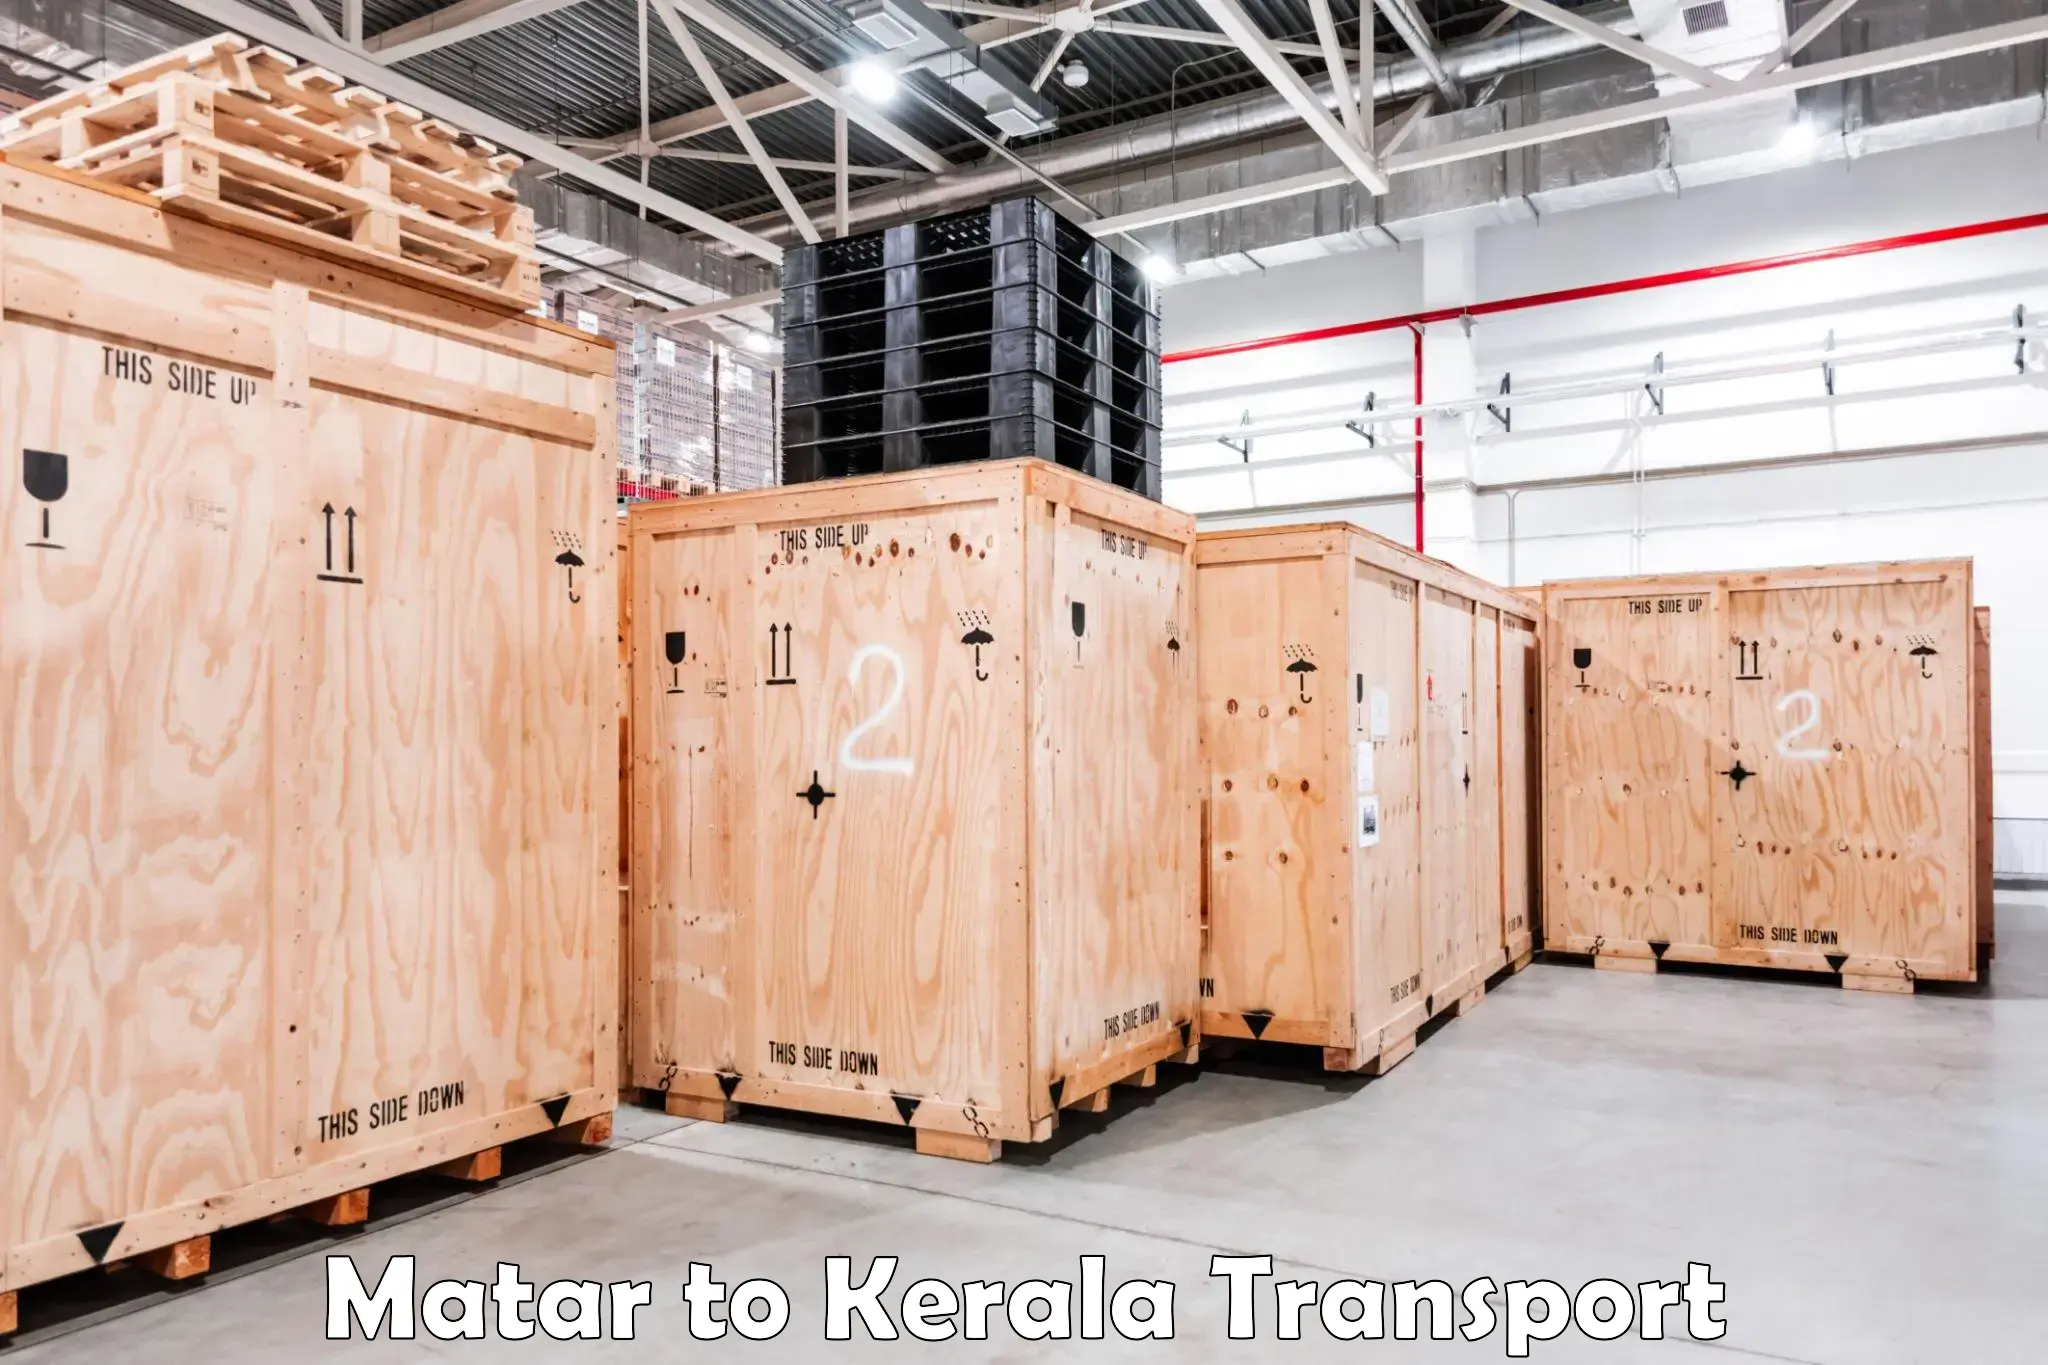 Transport in sharing Matar to Kazhakkoottam